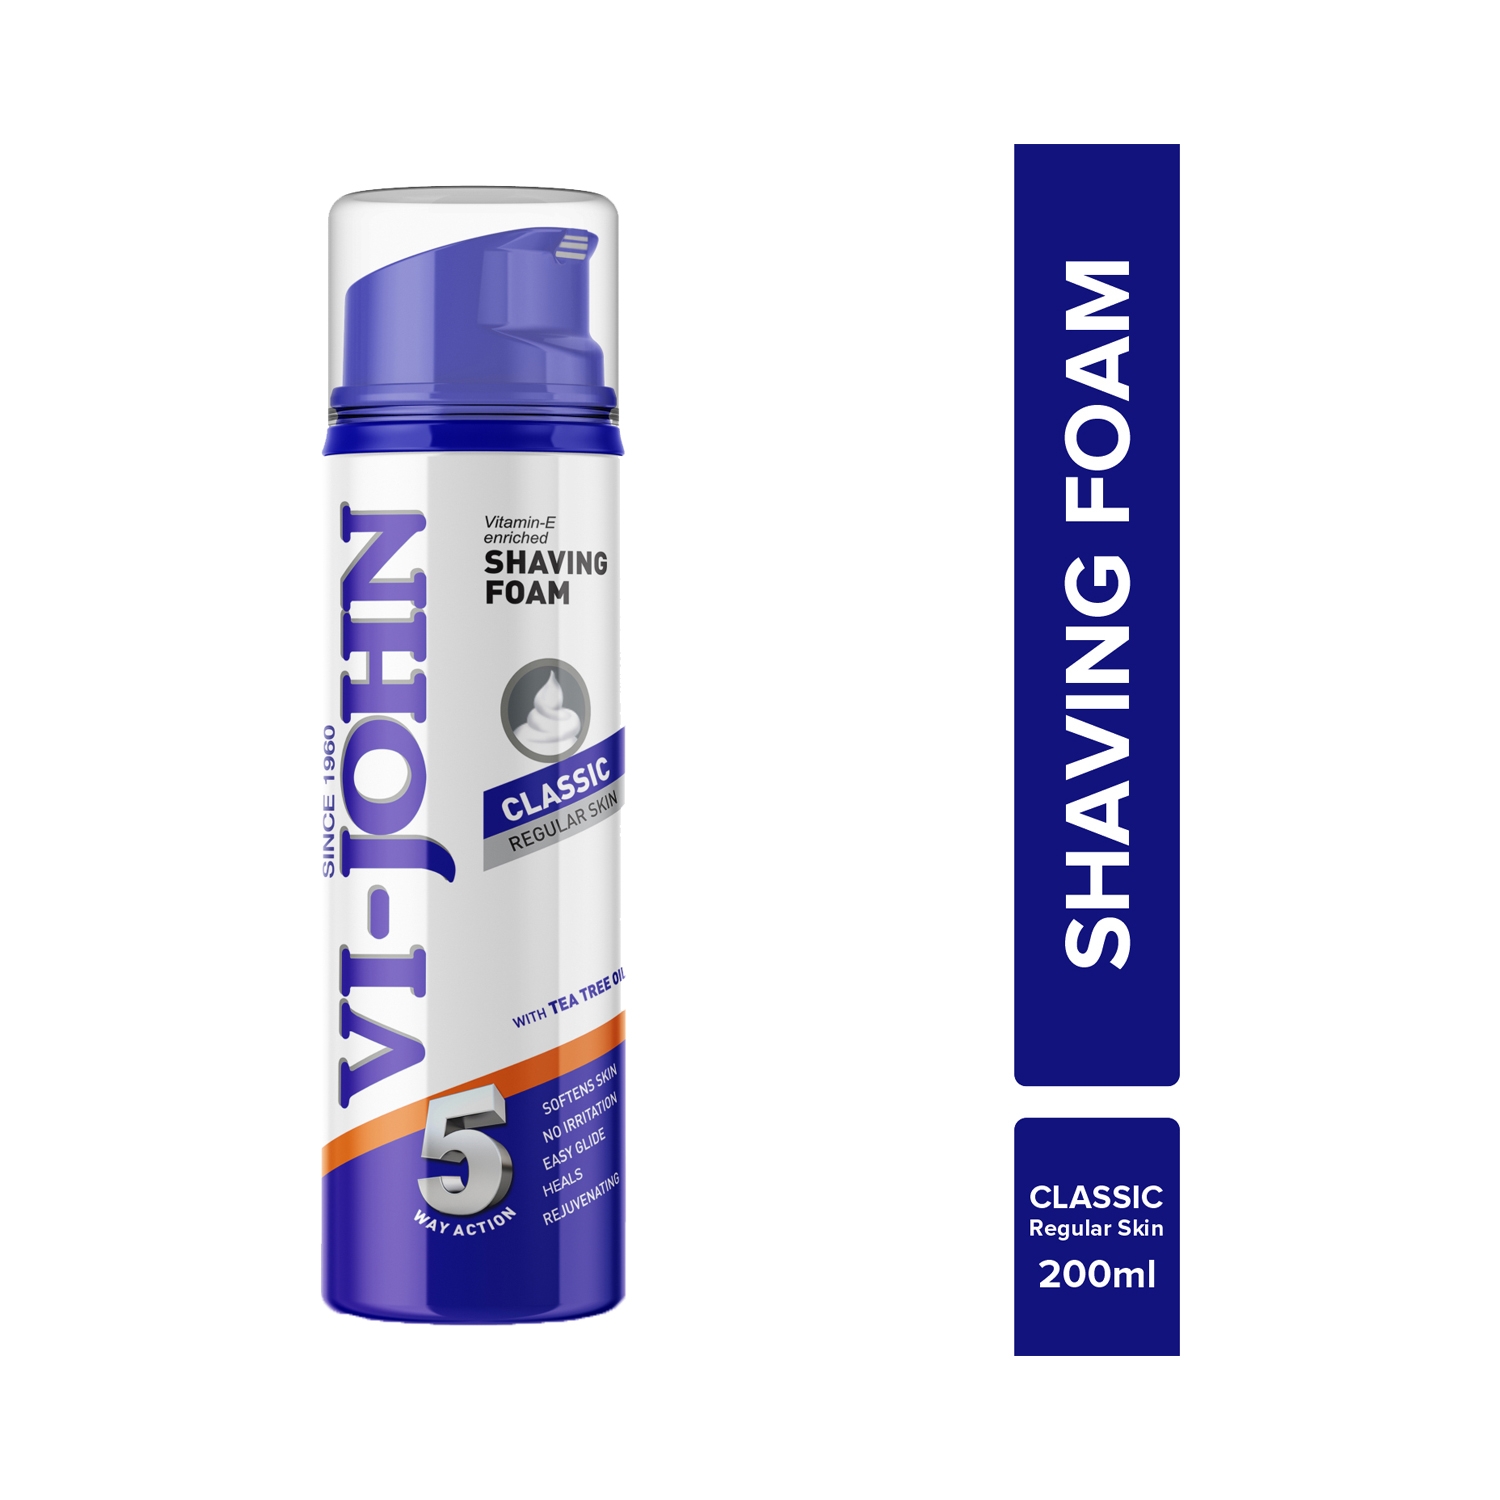 VI-JOHN | VI-JOHN Classic 5 Way Action Shaving Foam Enriched Vitamin E (200ml)